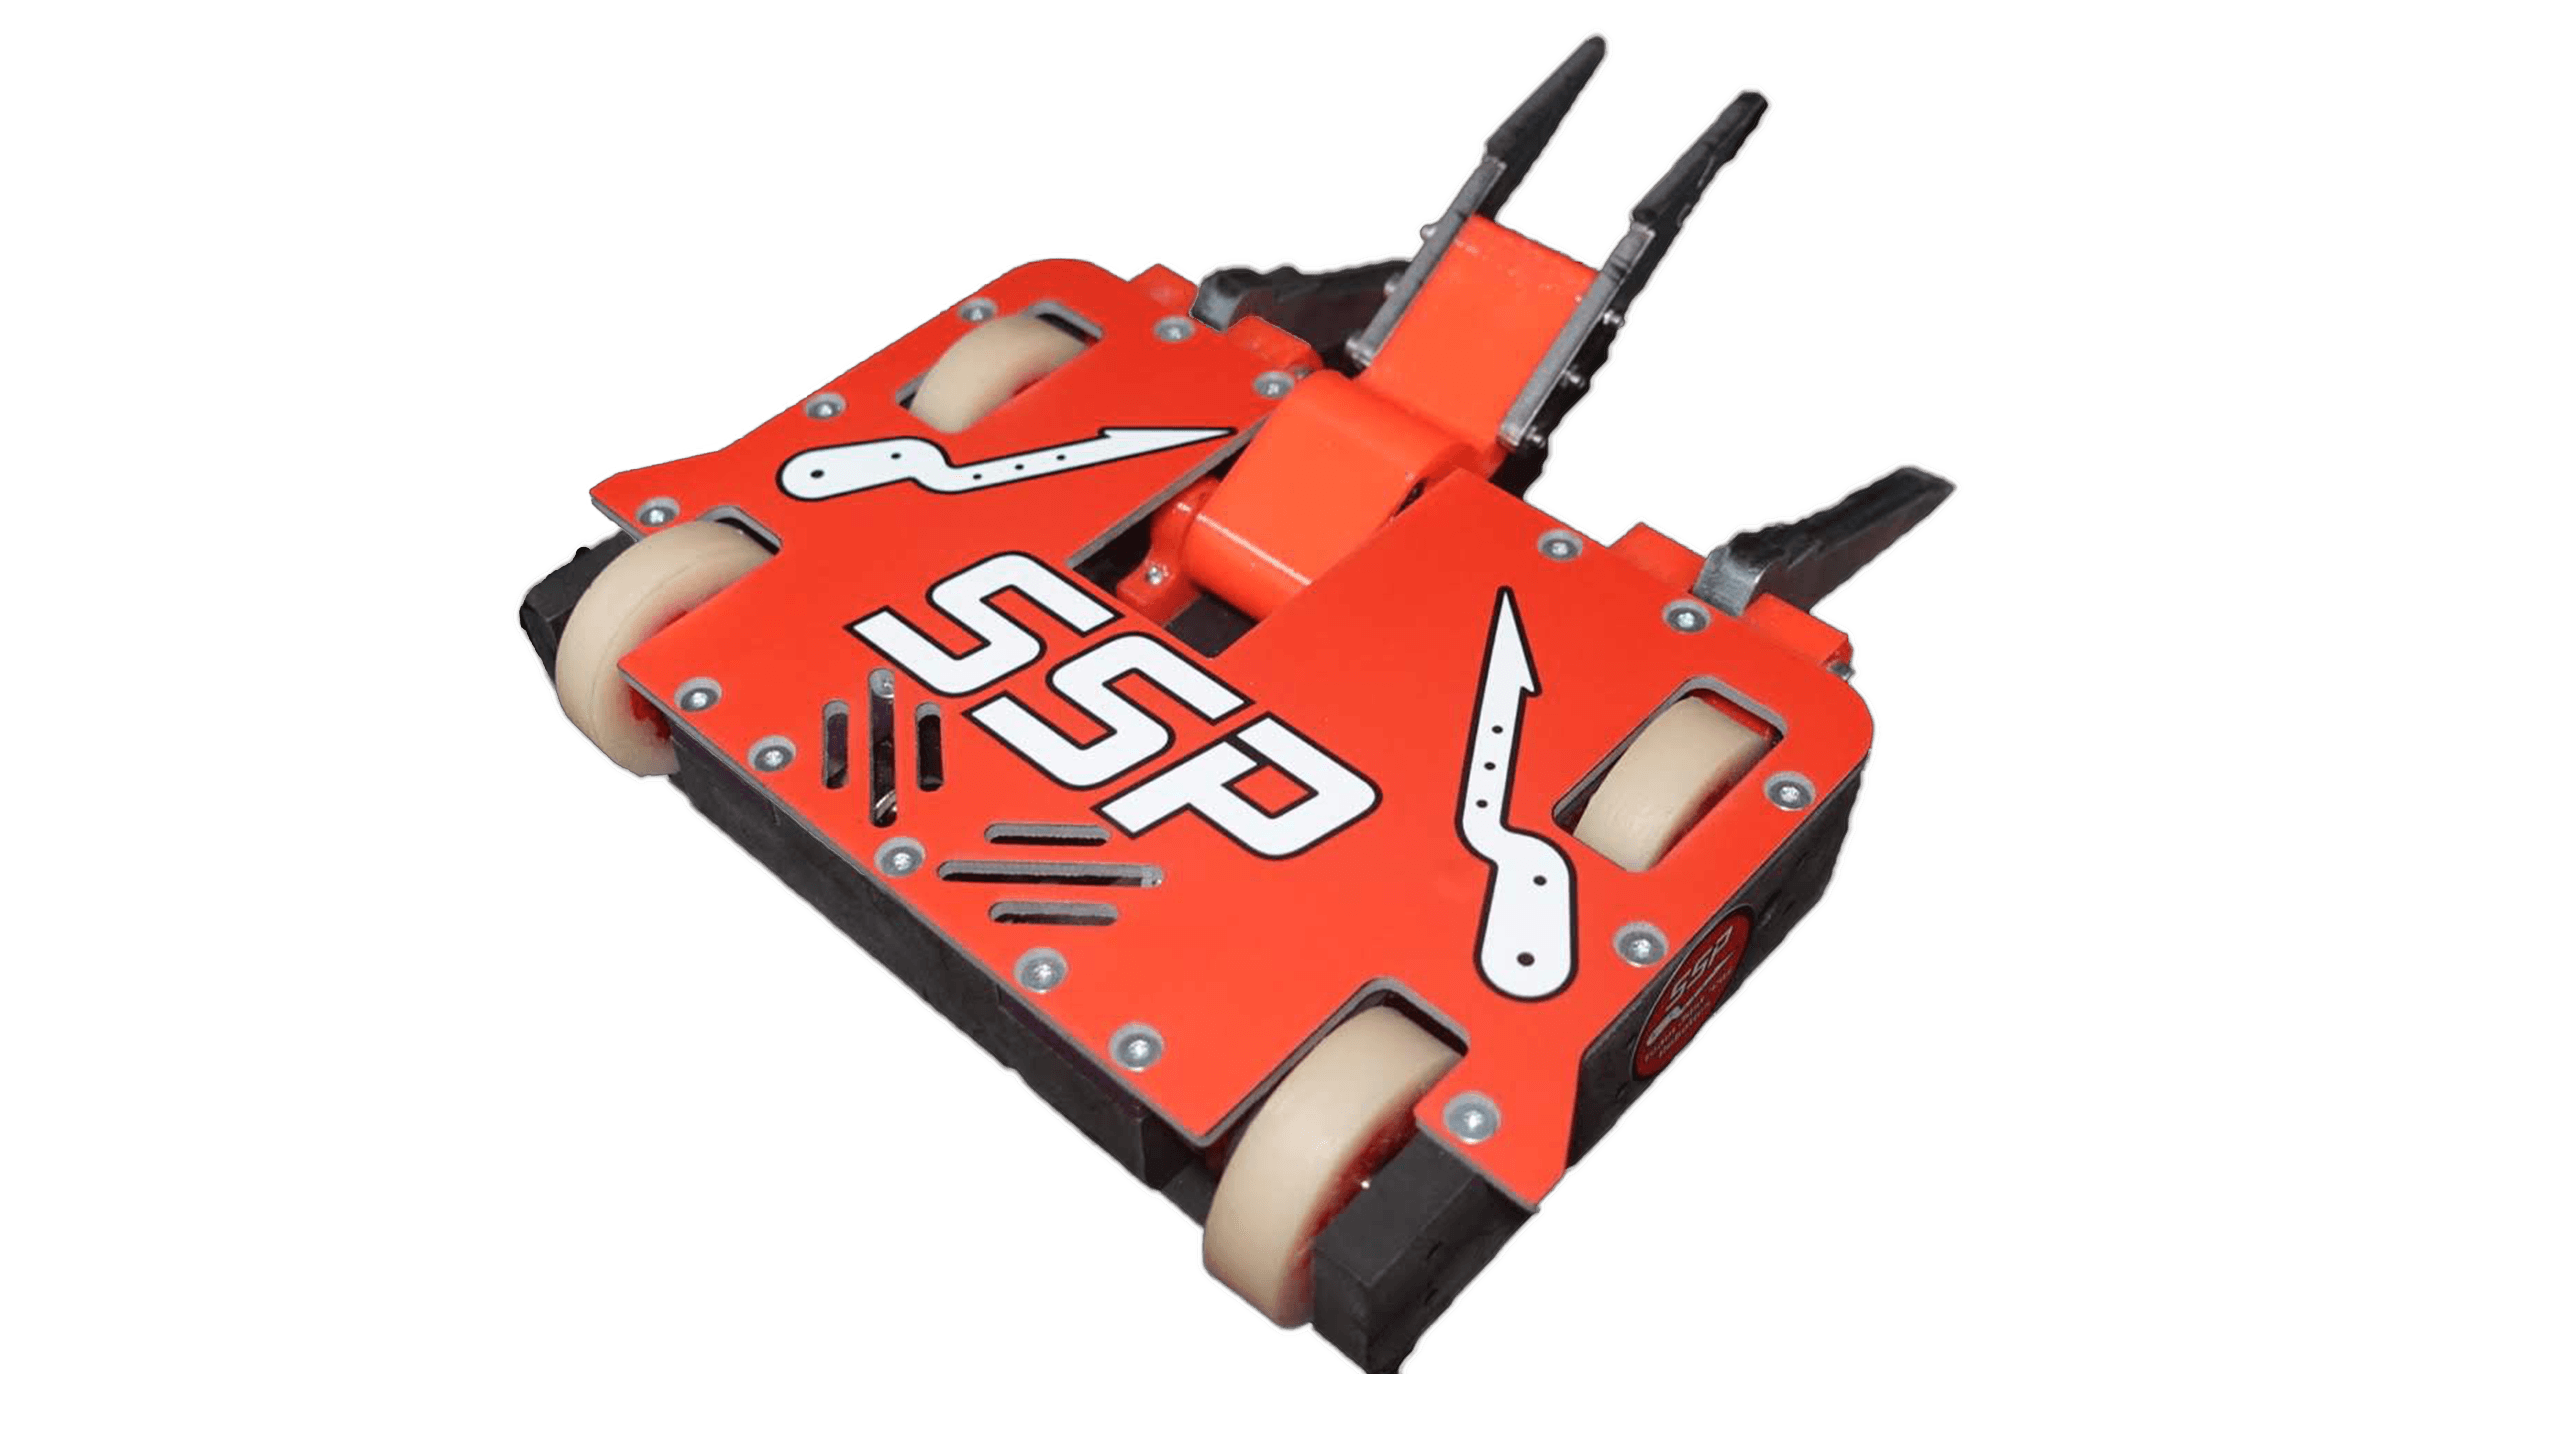 SSP Beetleweight Combat Robot Kit Design Files - SSP Kit Stock Photo - 3d model